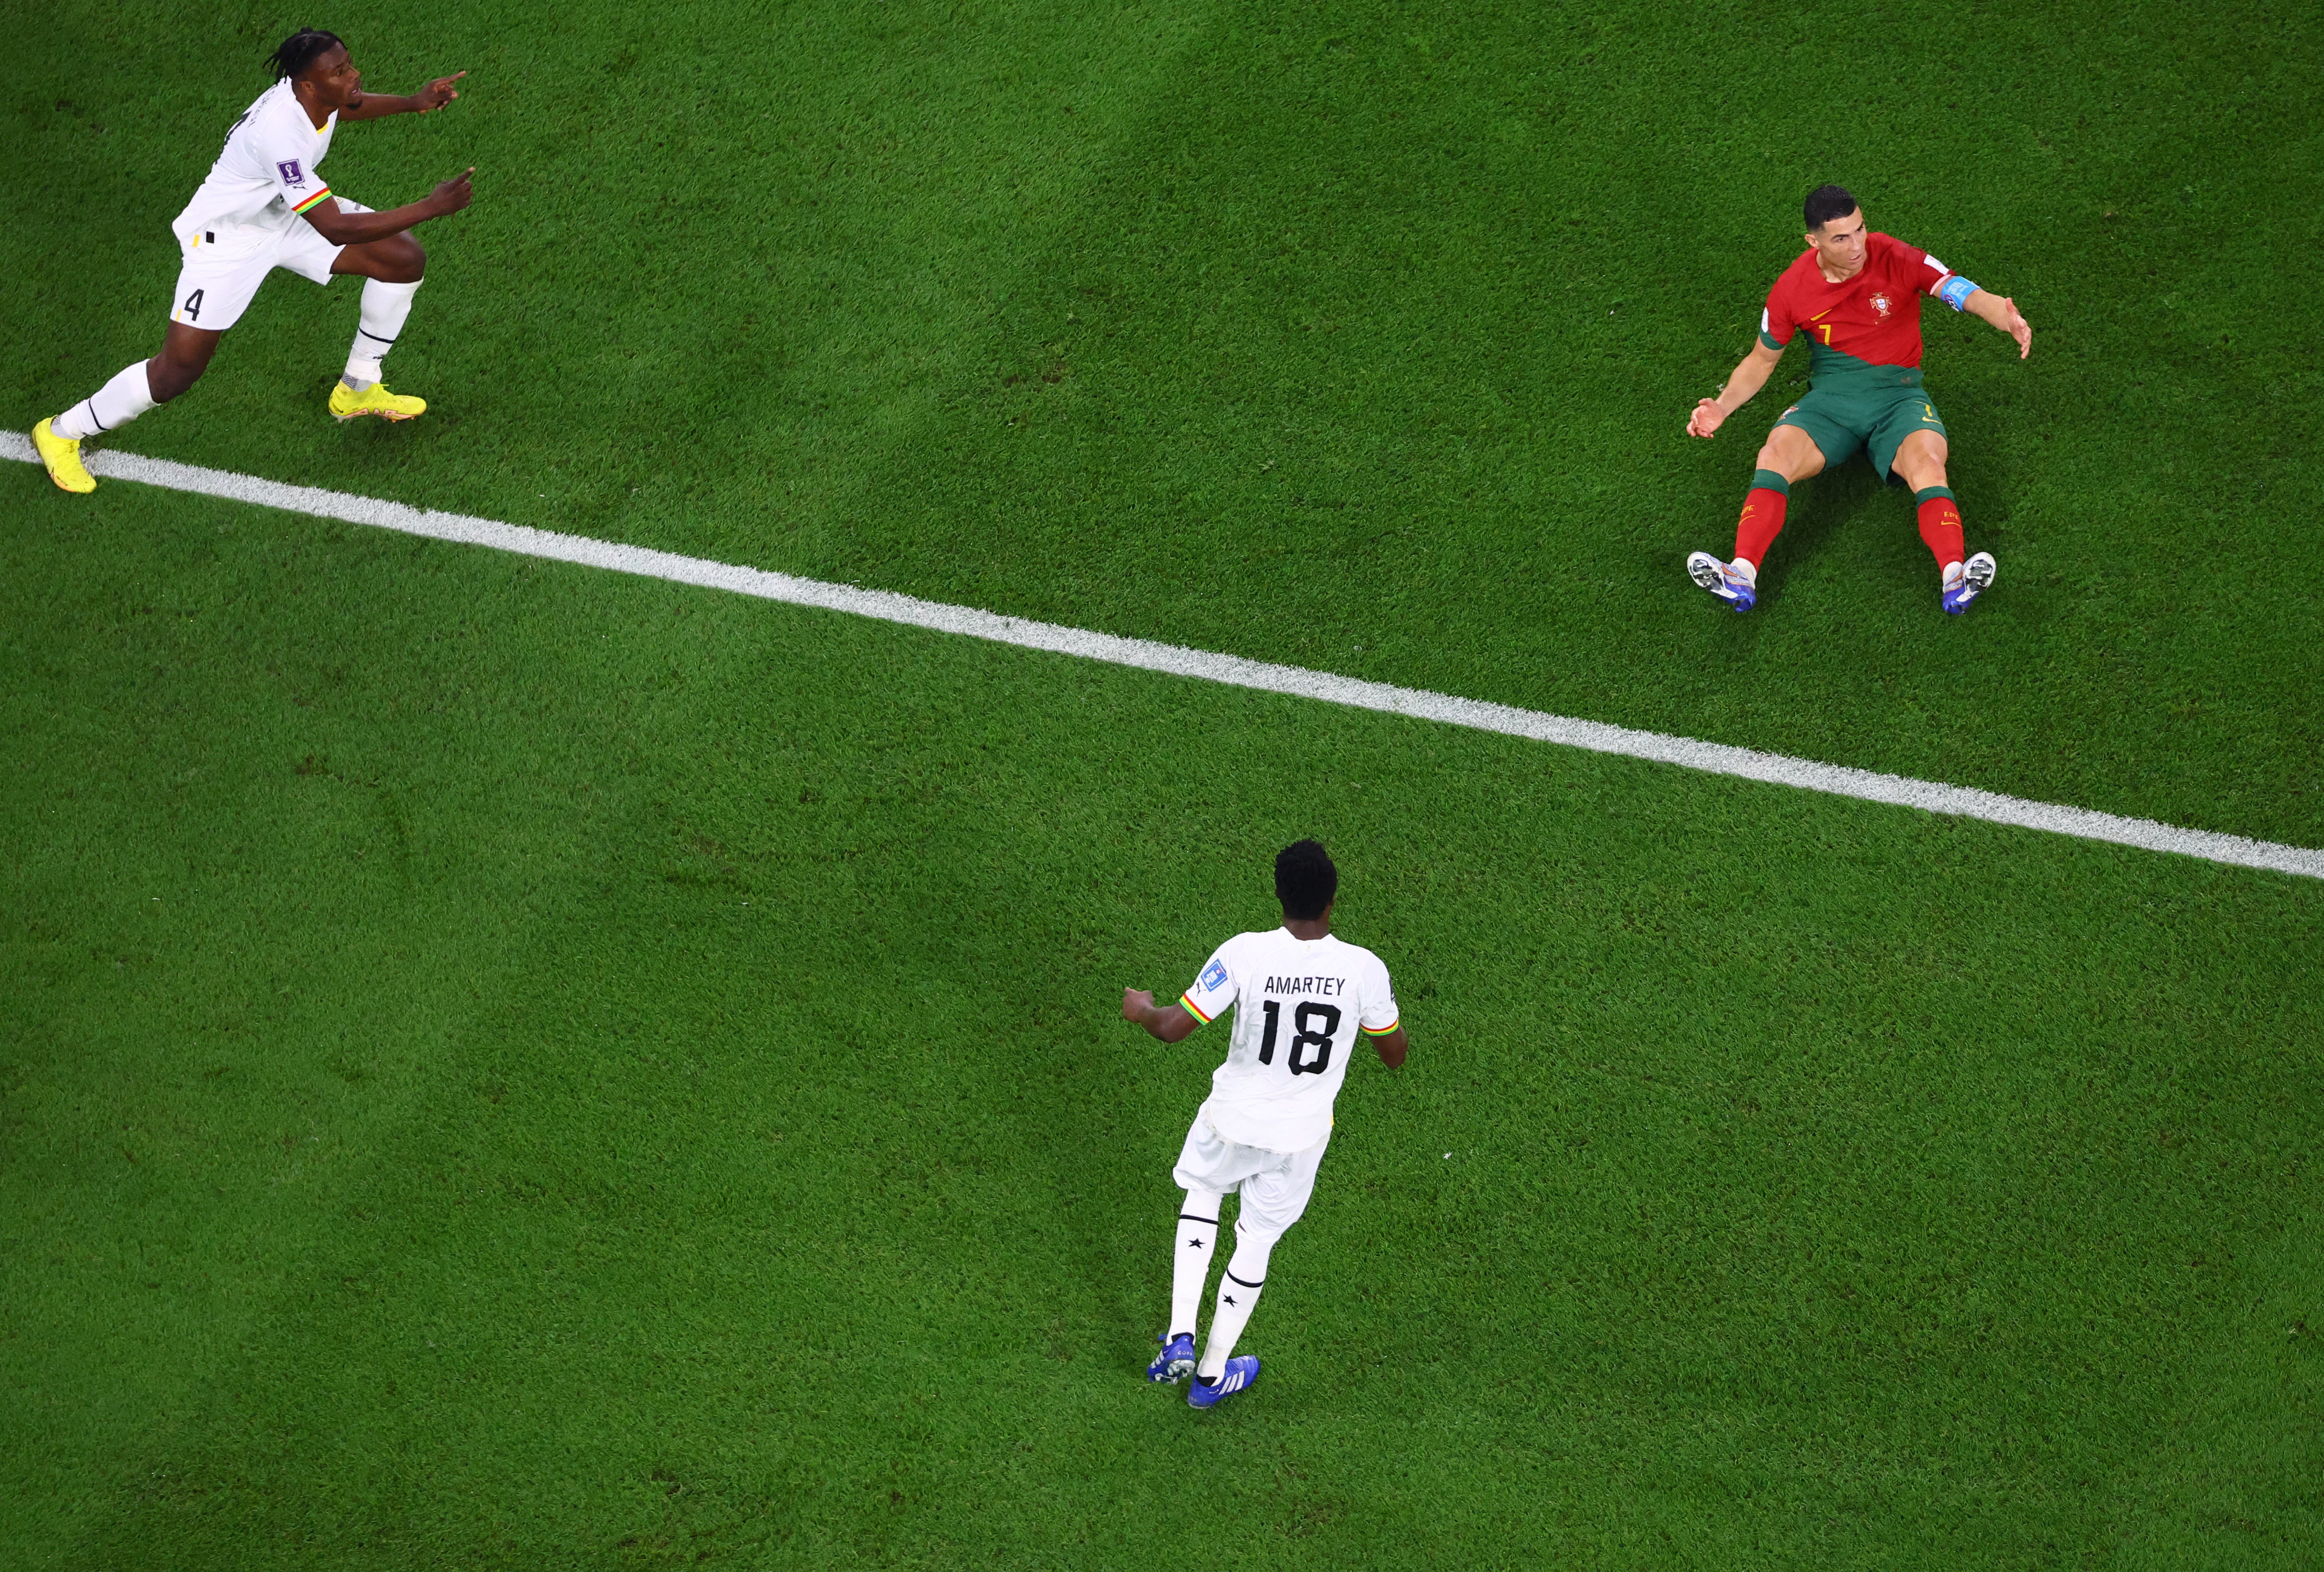 La reacción de Ghana sorprendió a Portugal. Foto: REUTERS/Fabrizio Bensch